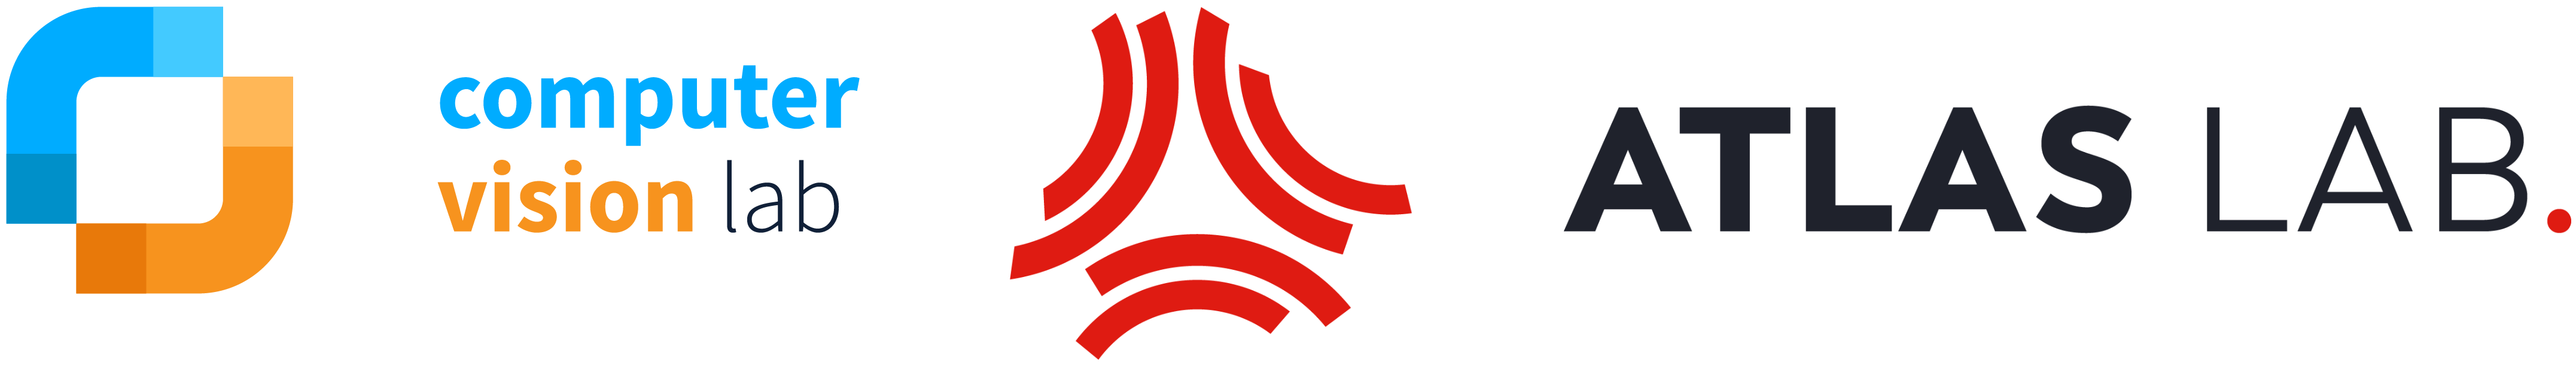 ATLAS lab logo